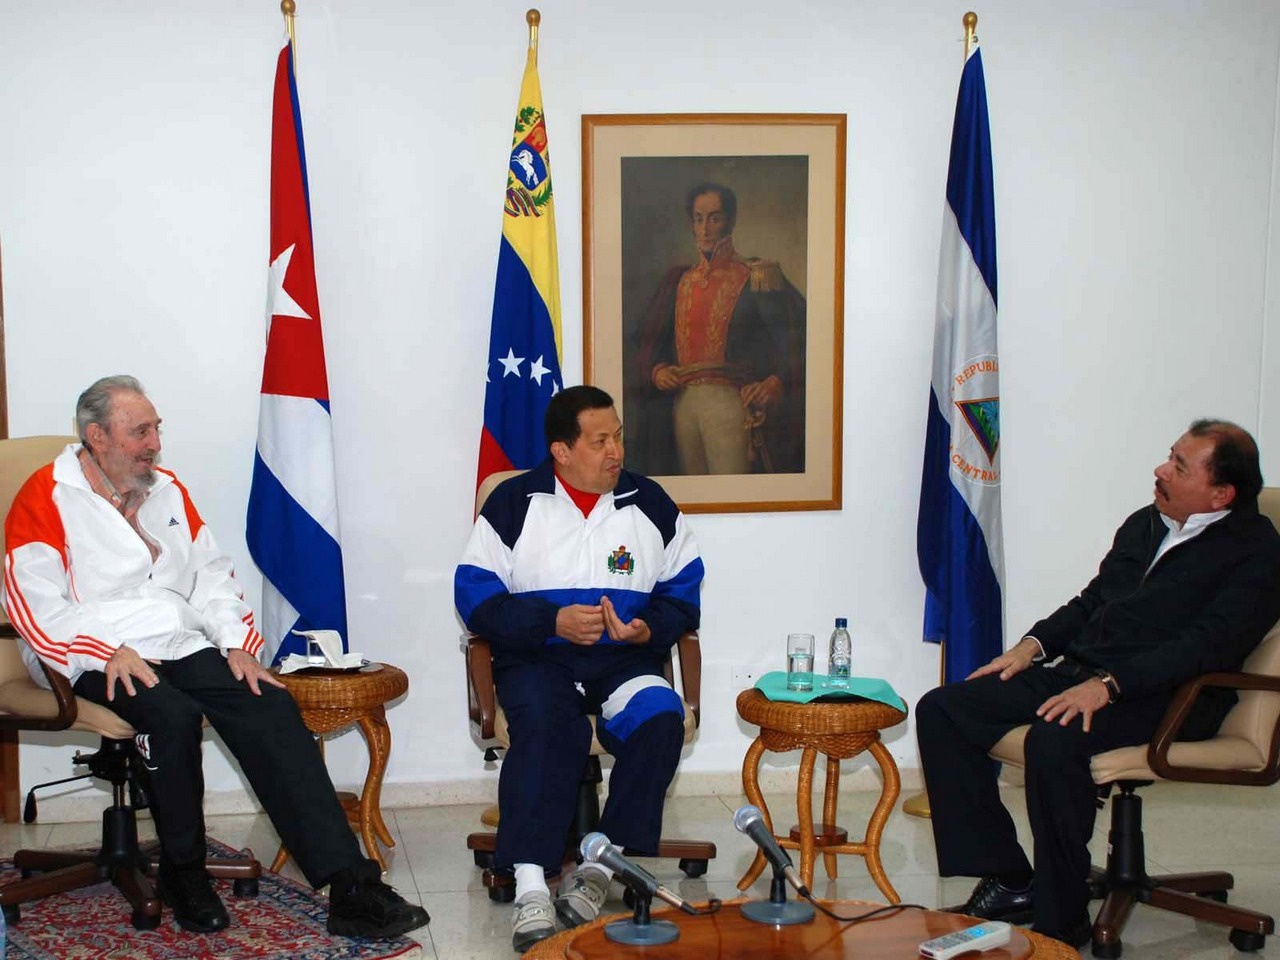 У трёх стран давние связи, основанные на симпатиях их лидеров. Слева направо: Фидель Кастро, Уго Чавес и Даниэль Ортега в Гаване, 2011 г.